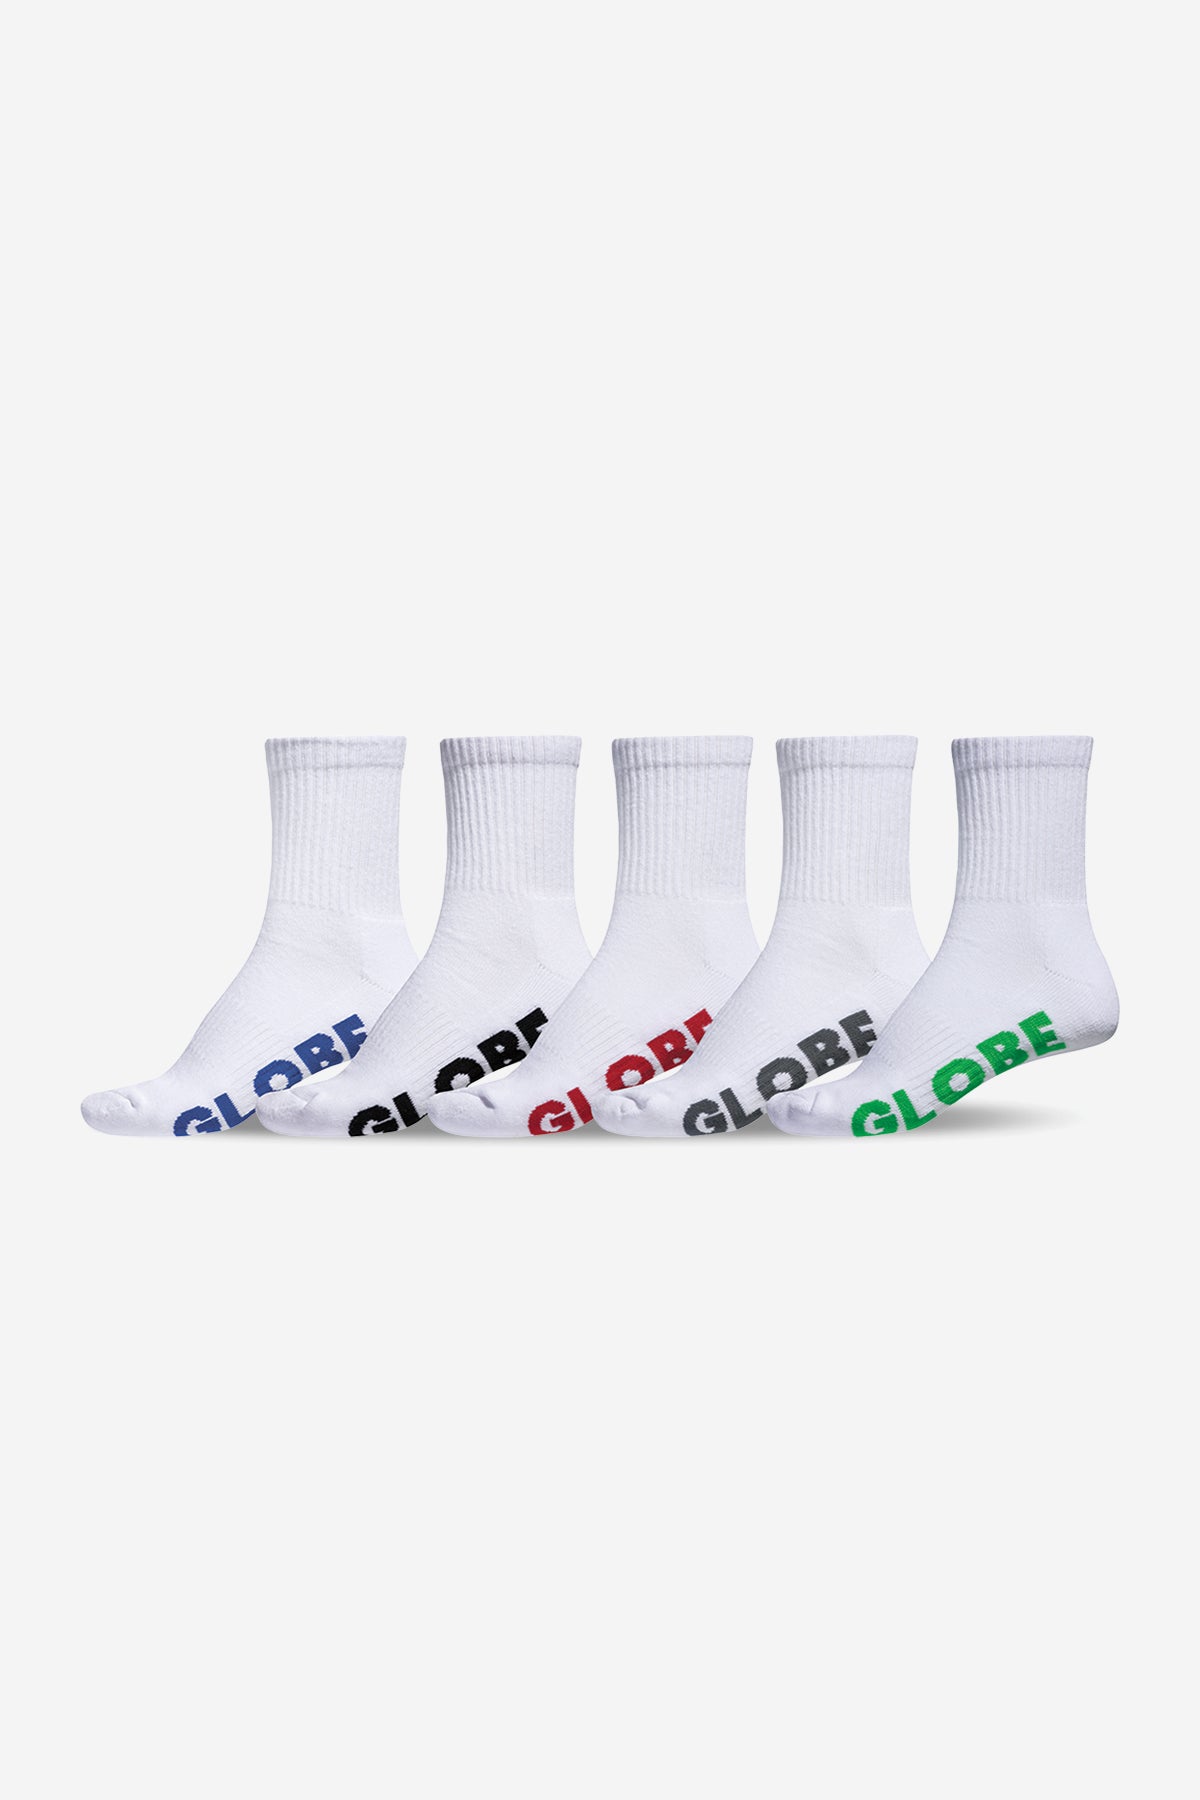 Stealth Crew Sock 5 Pack - Globe Brand AU